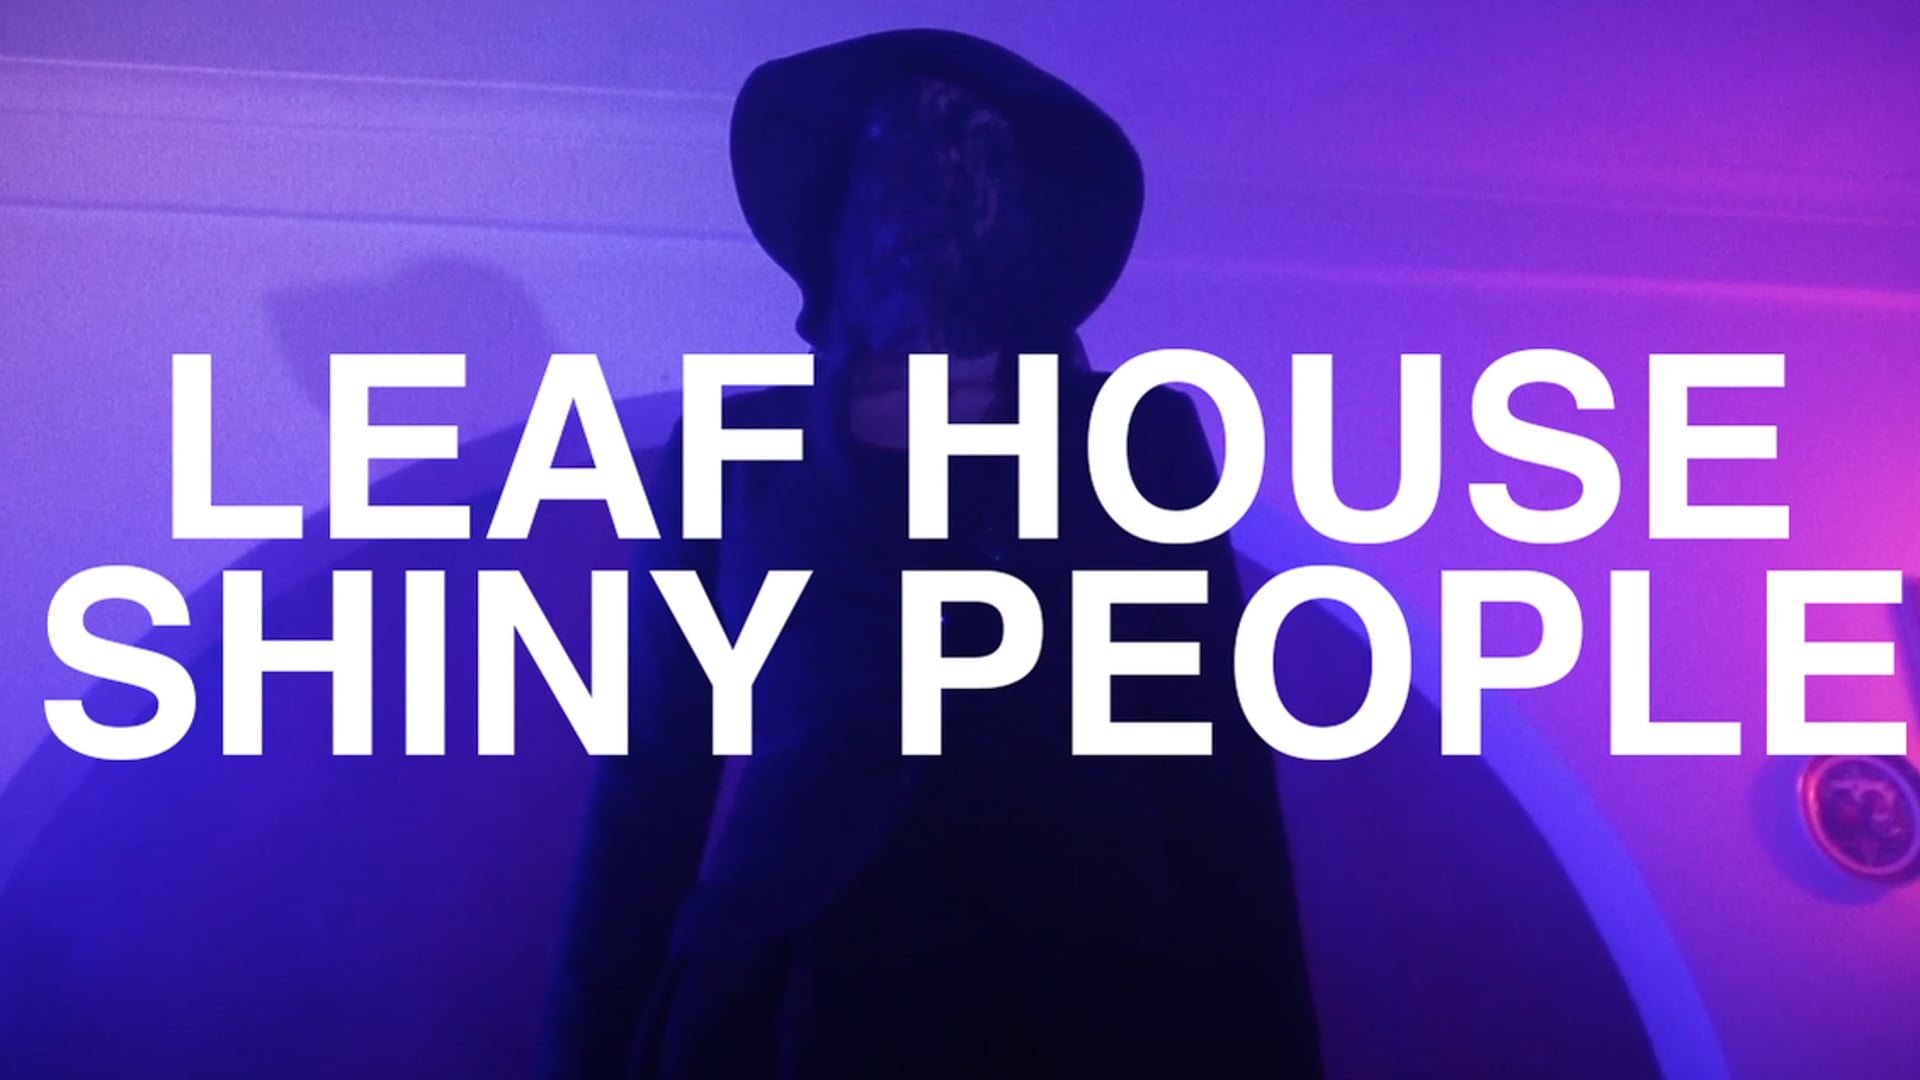 LEAF HOUSE - SHINY PEOPLE